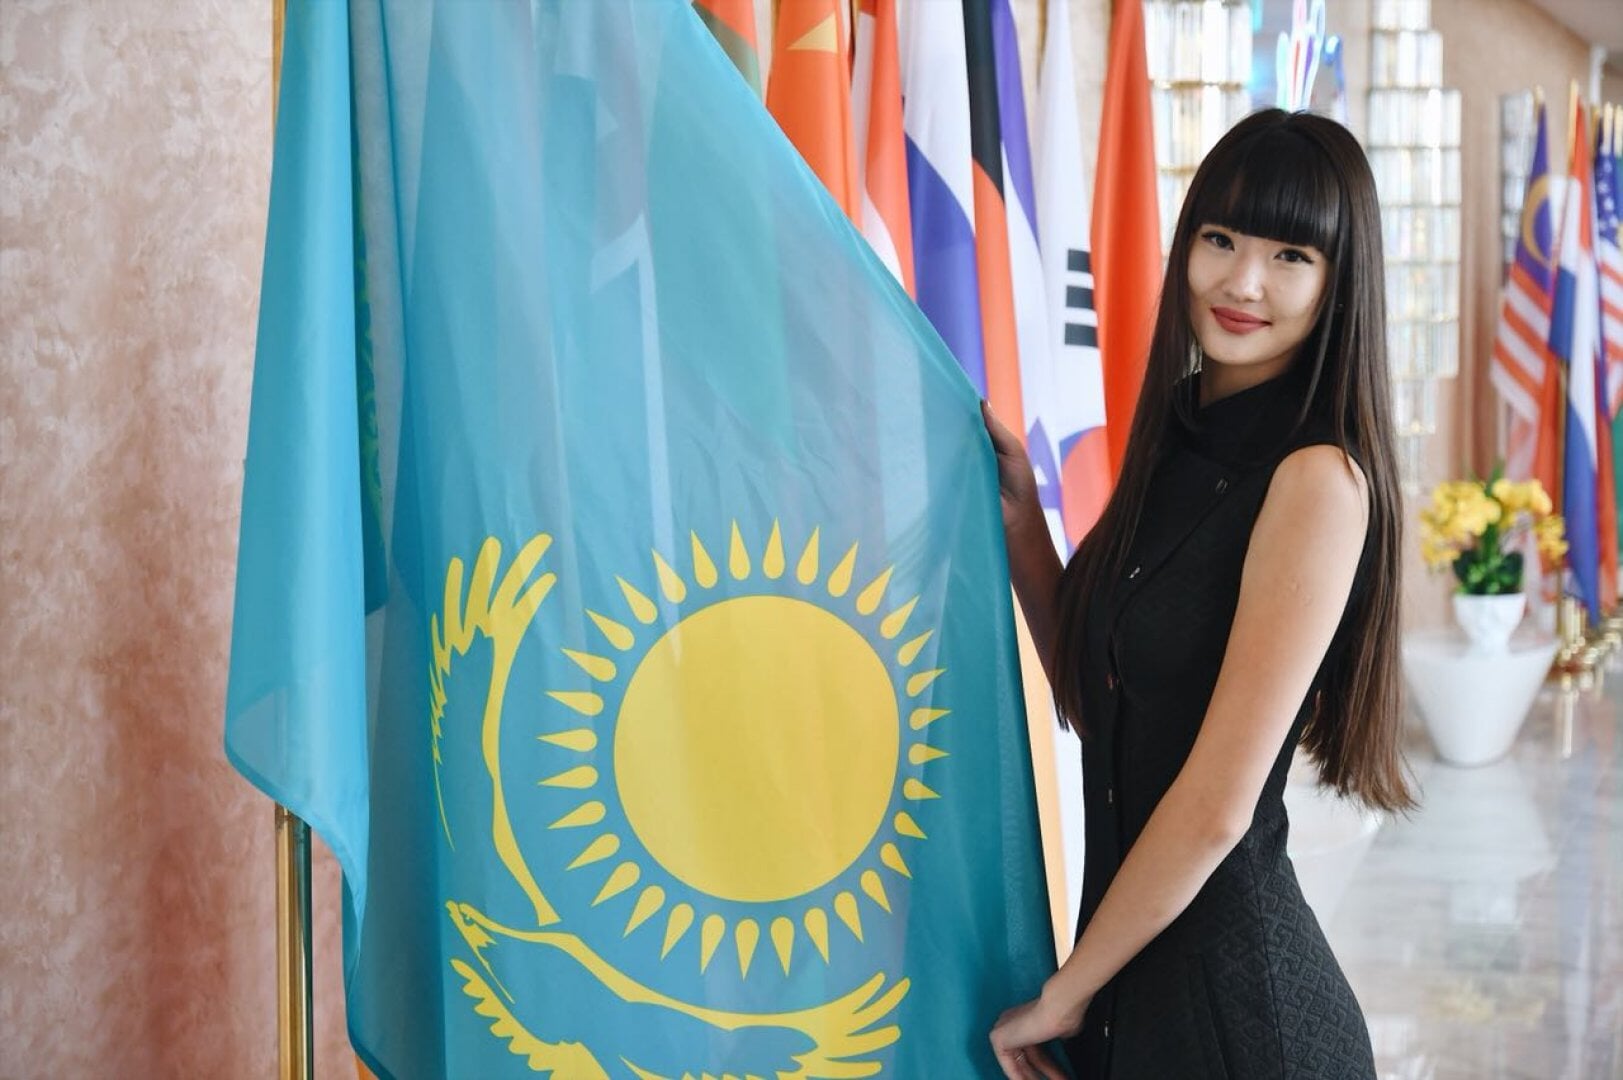 Казахские Красивые Девушки